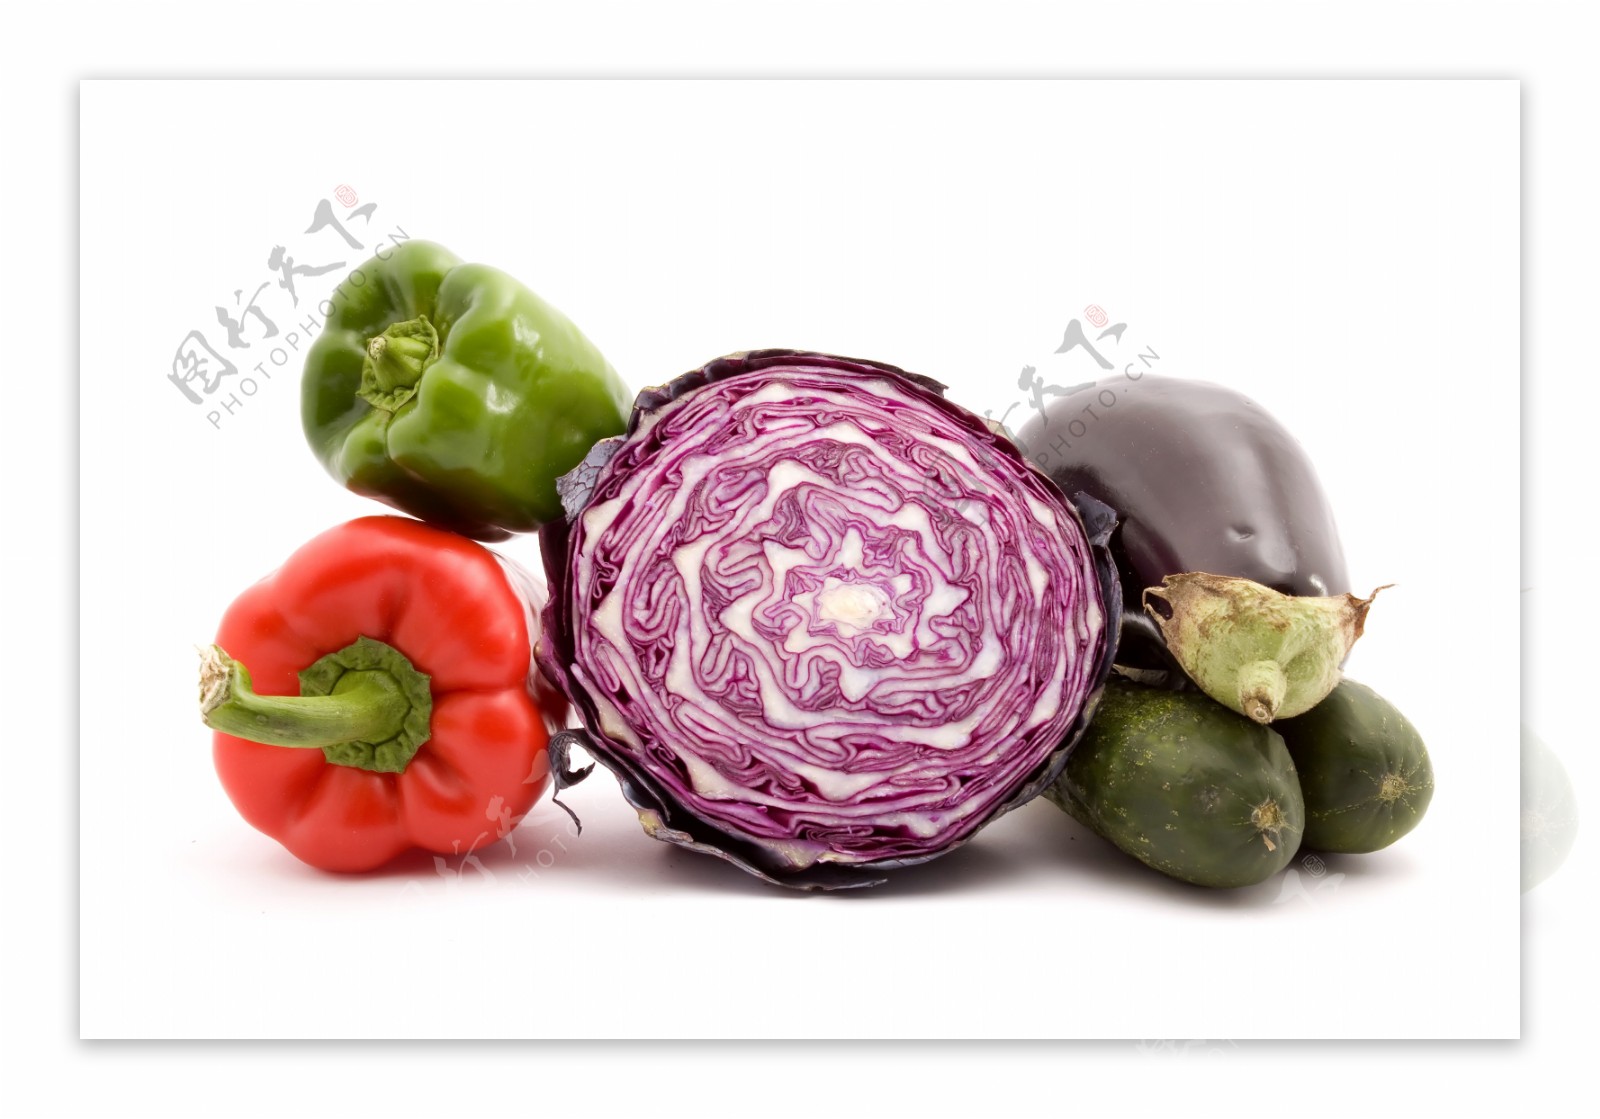 青菜和紫包菜和茄子图片